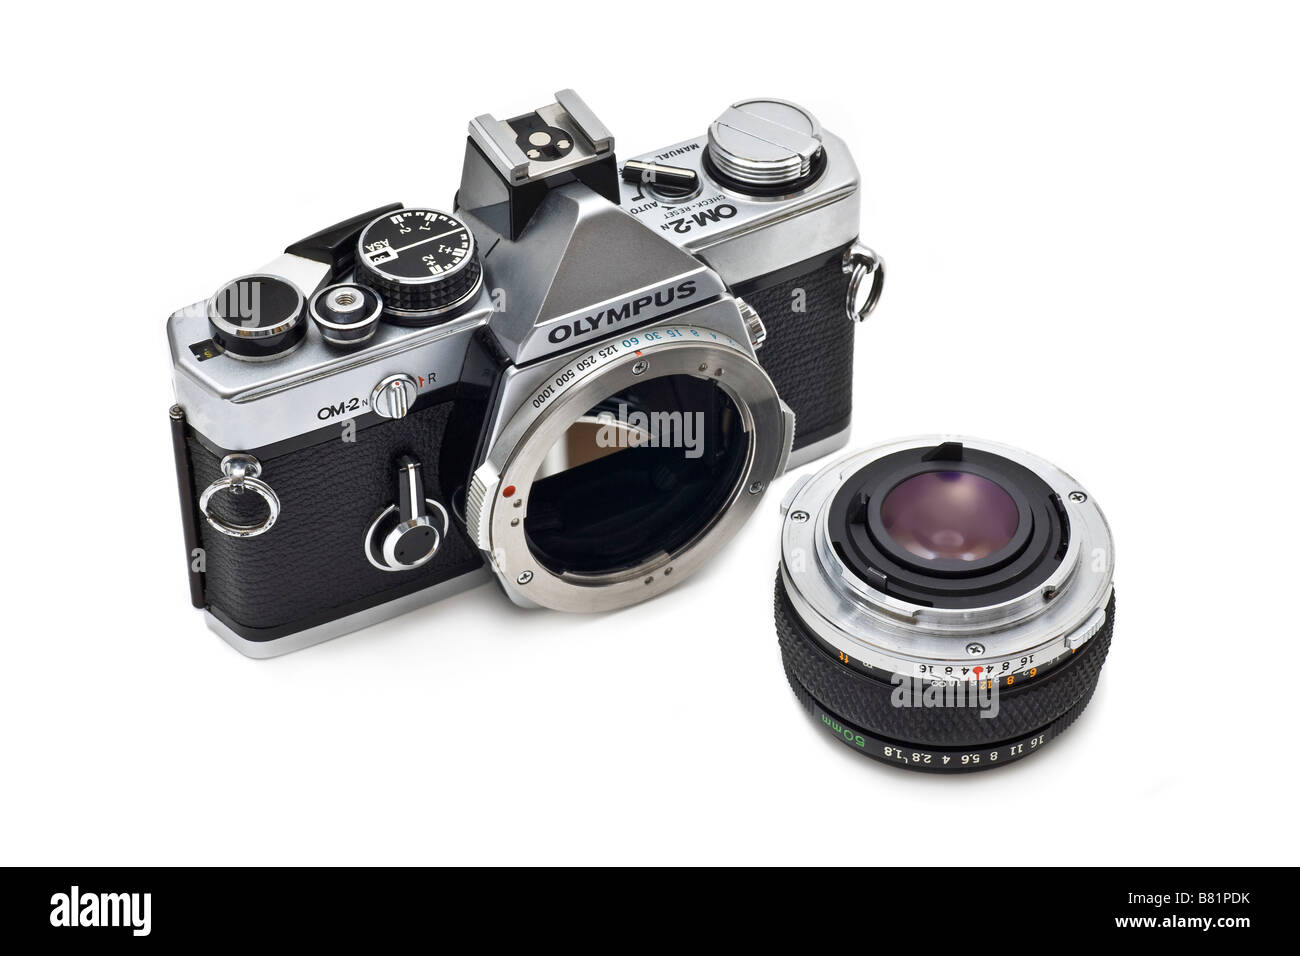 Olympus OM2 35mm cámara réflex de lente sinle mostrando con lentes intercambiables de montura de bayoneta de brida Foto de stock